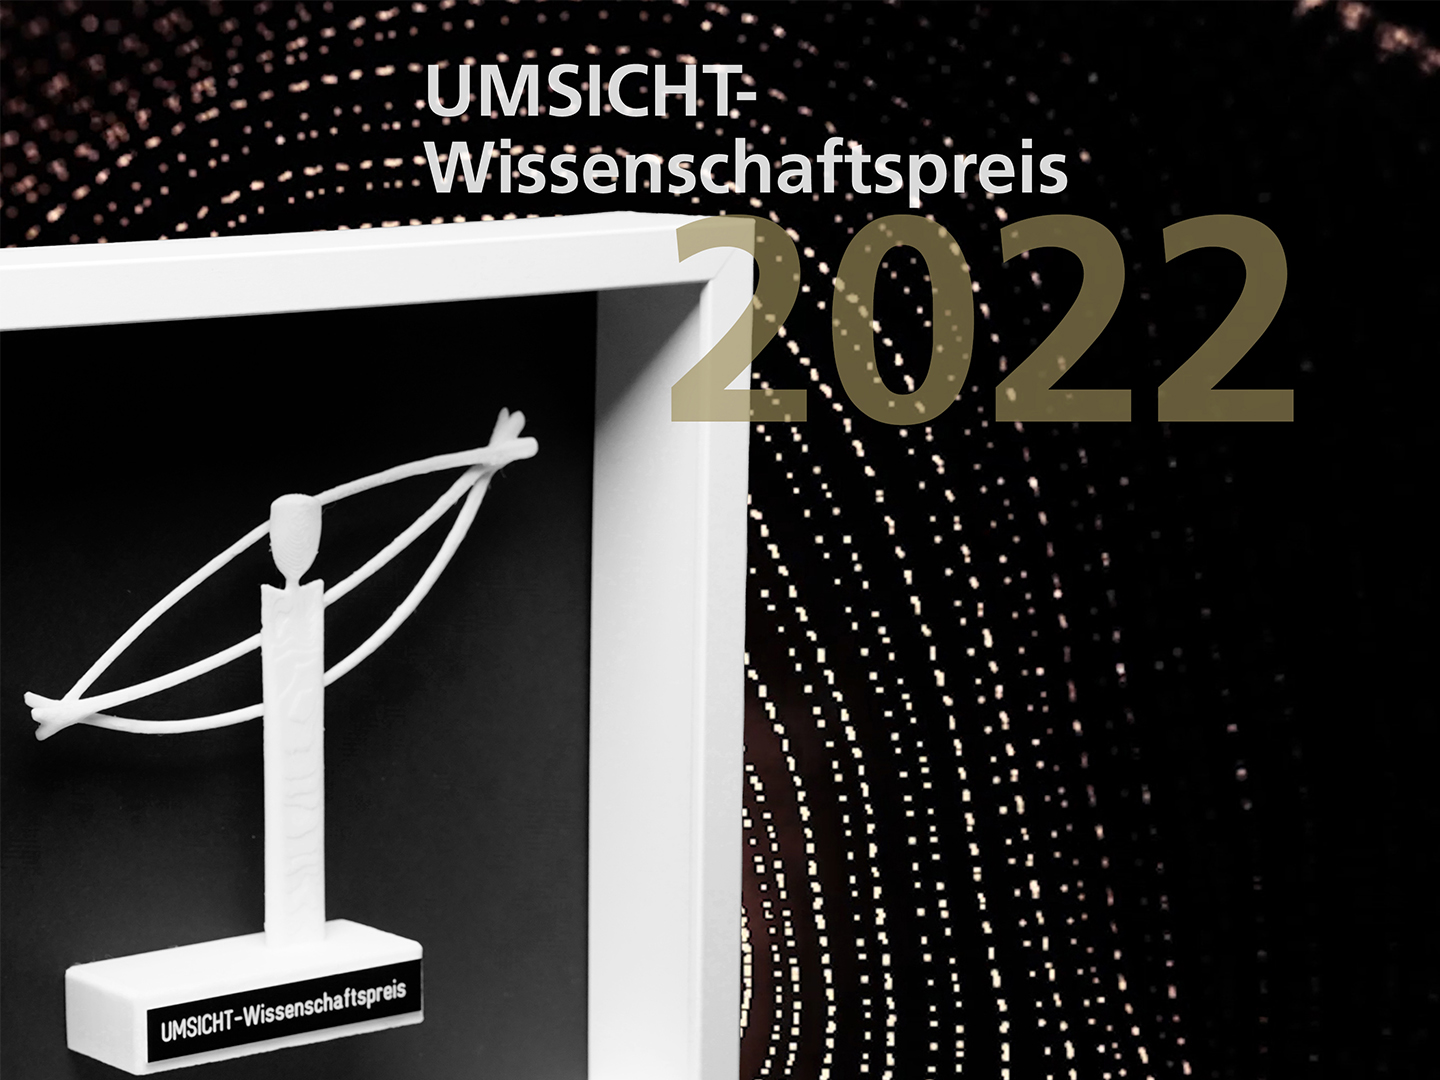 UMSICHT-Wissenschaftspreis 2022: Die Bewerbungsphase ist gestartet.